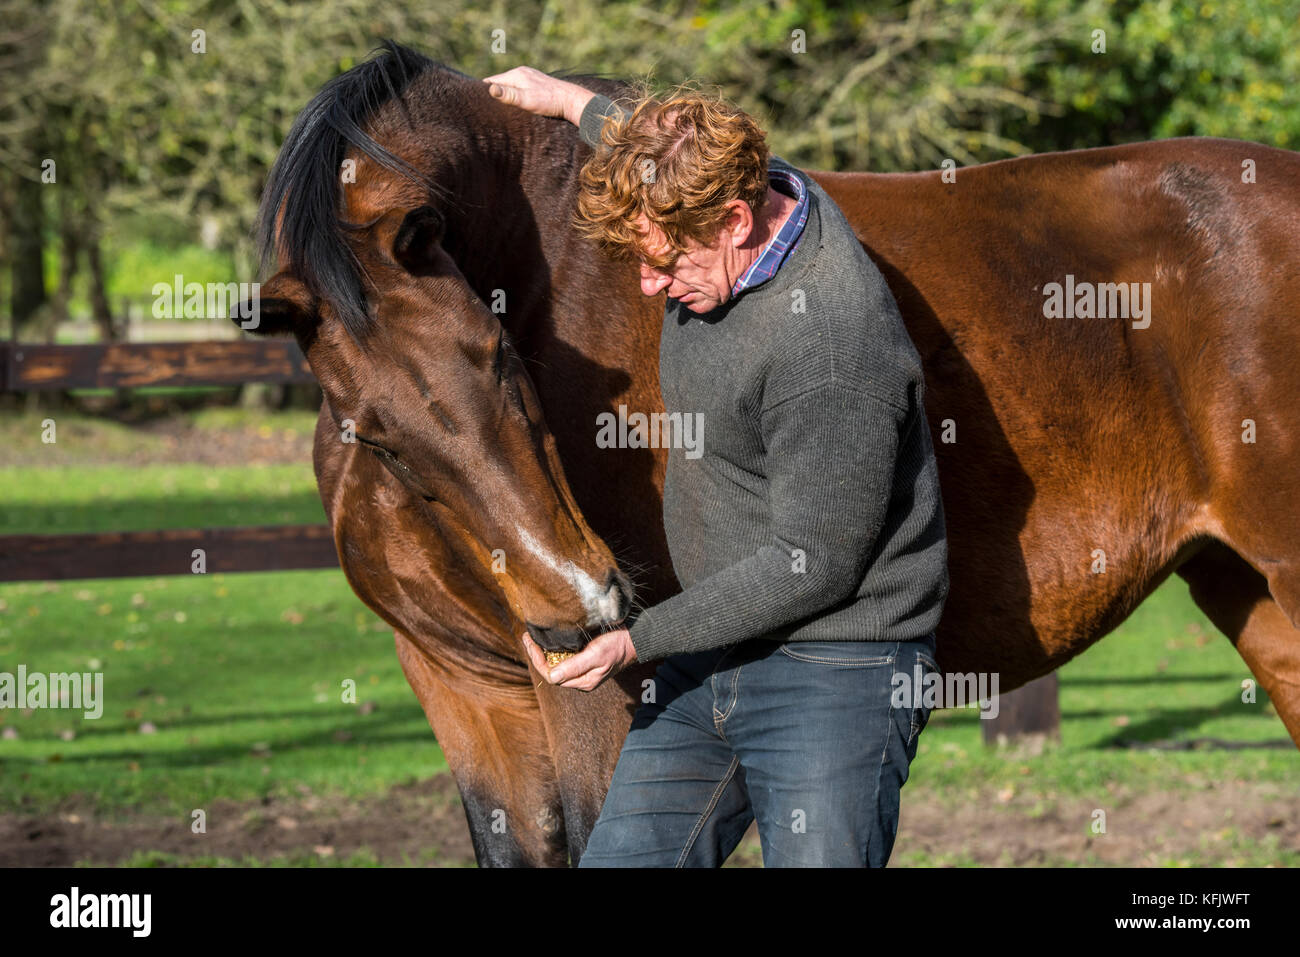 Mann braun belgische Warmblut Pferd geben ein Genuss im freien Feld in Holz- Gehäuse Stockfoto